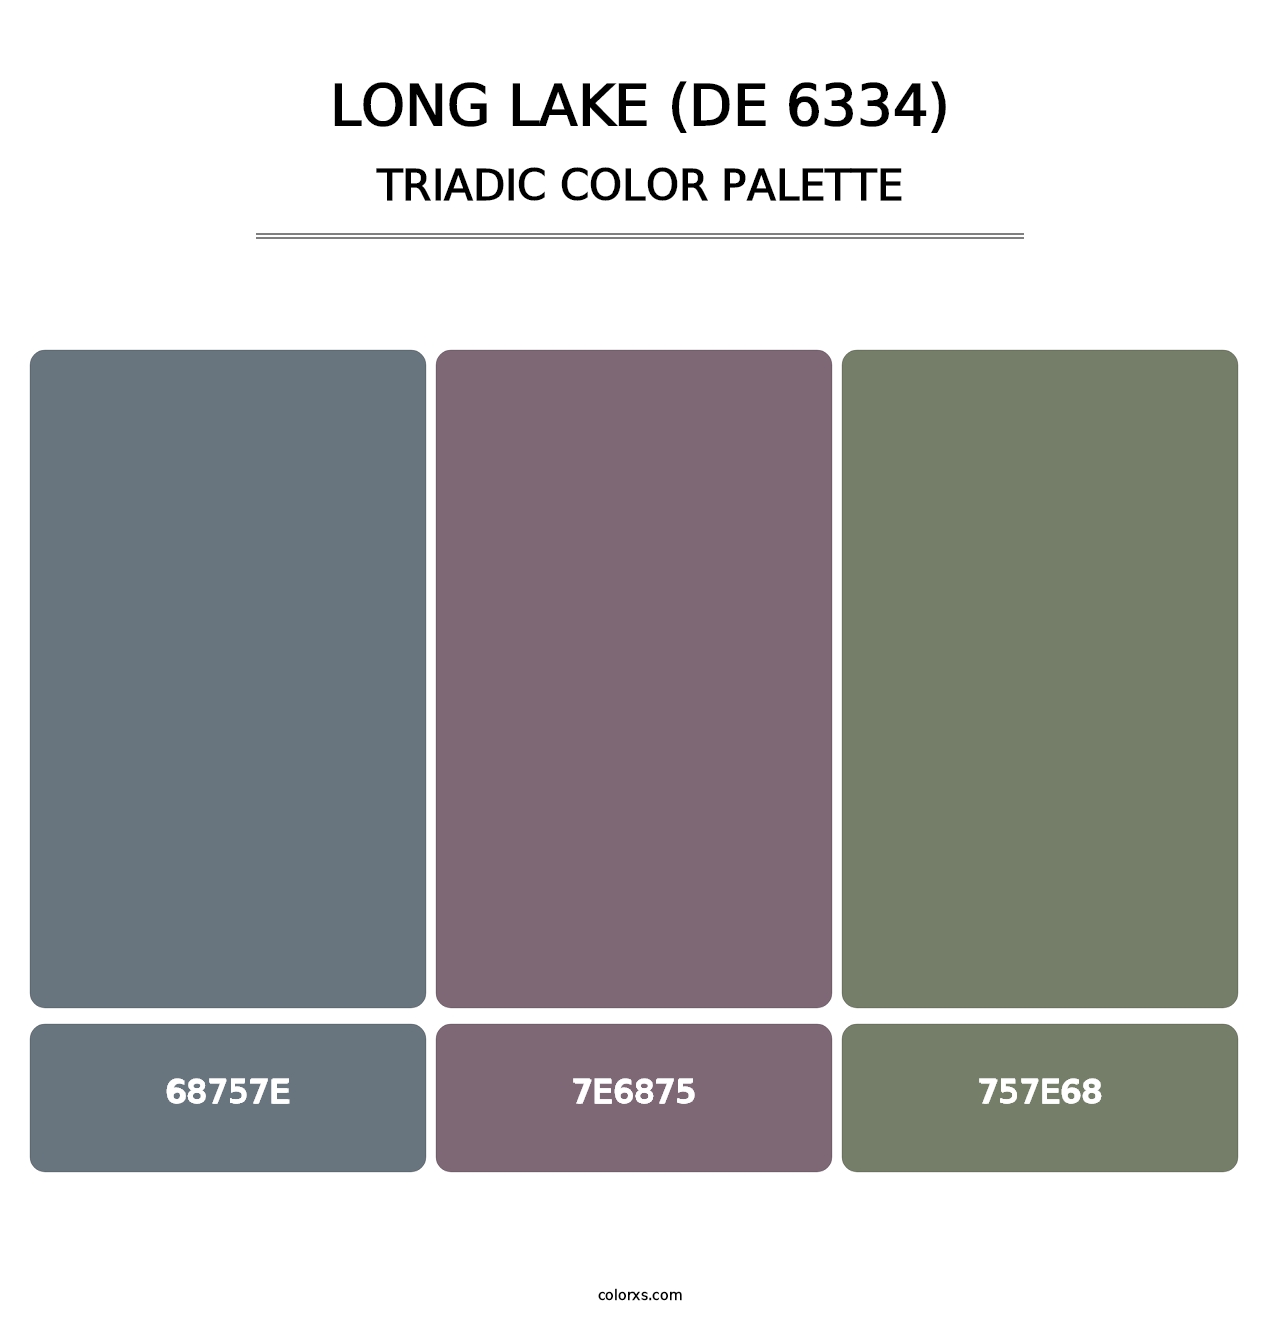 Long Lake (DE 6334) - Triadic Color Palette